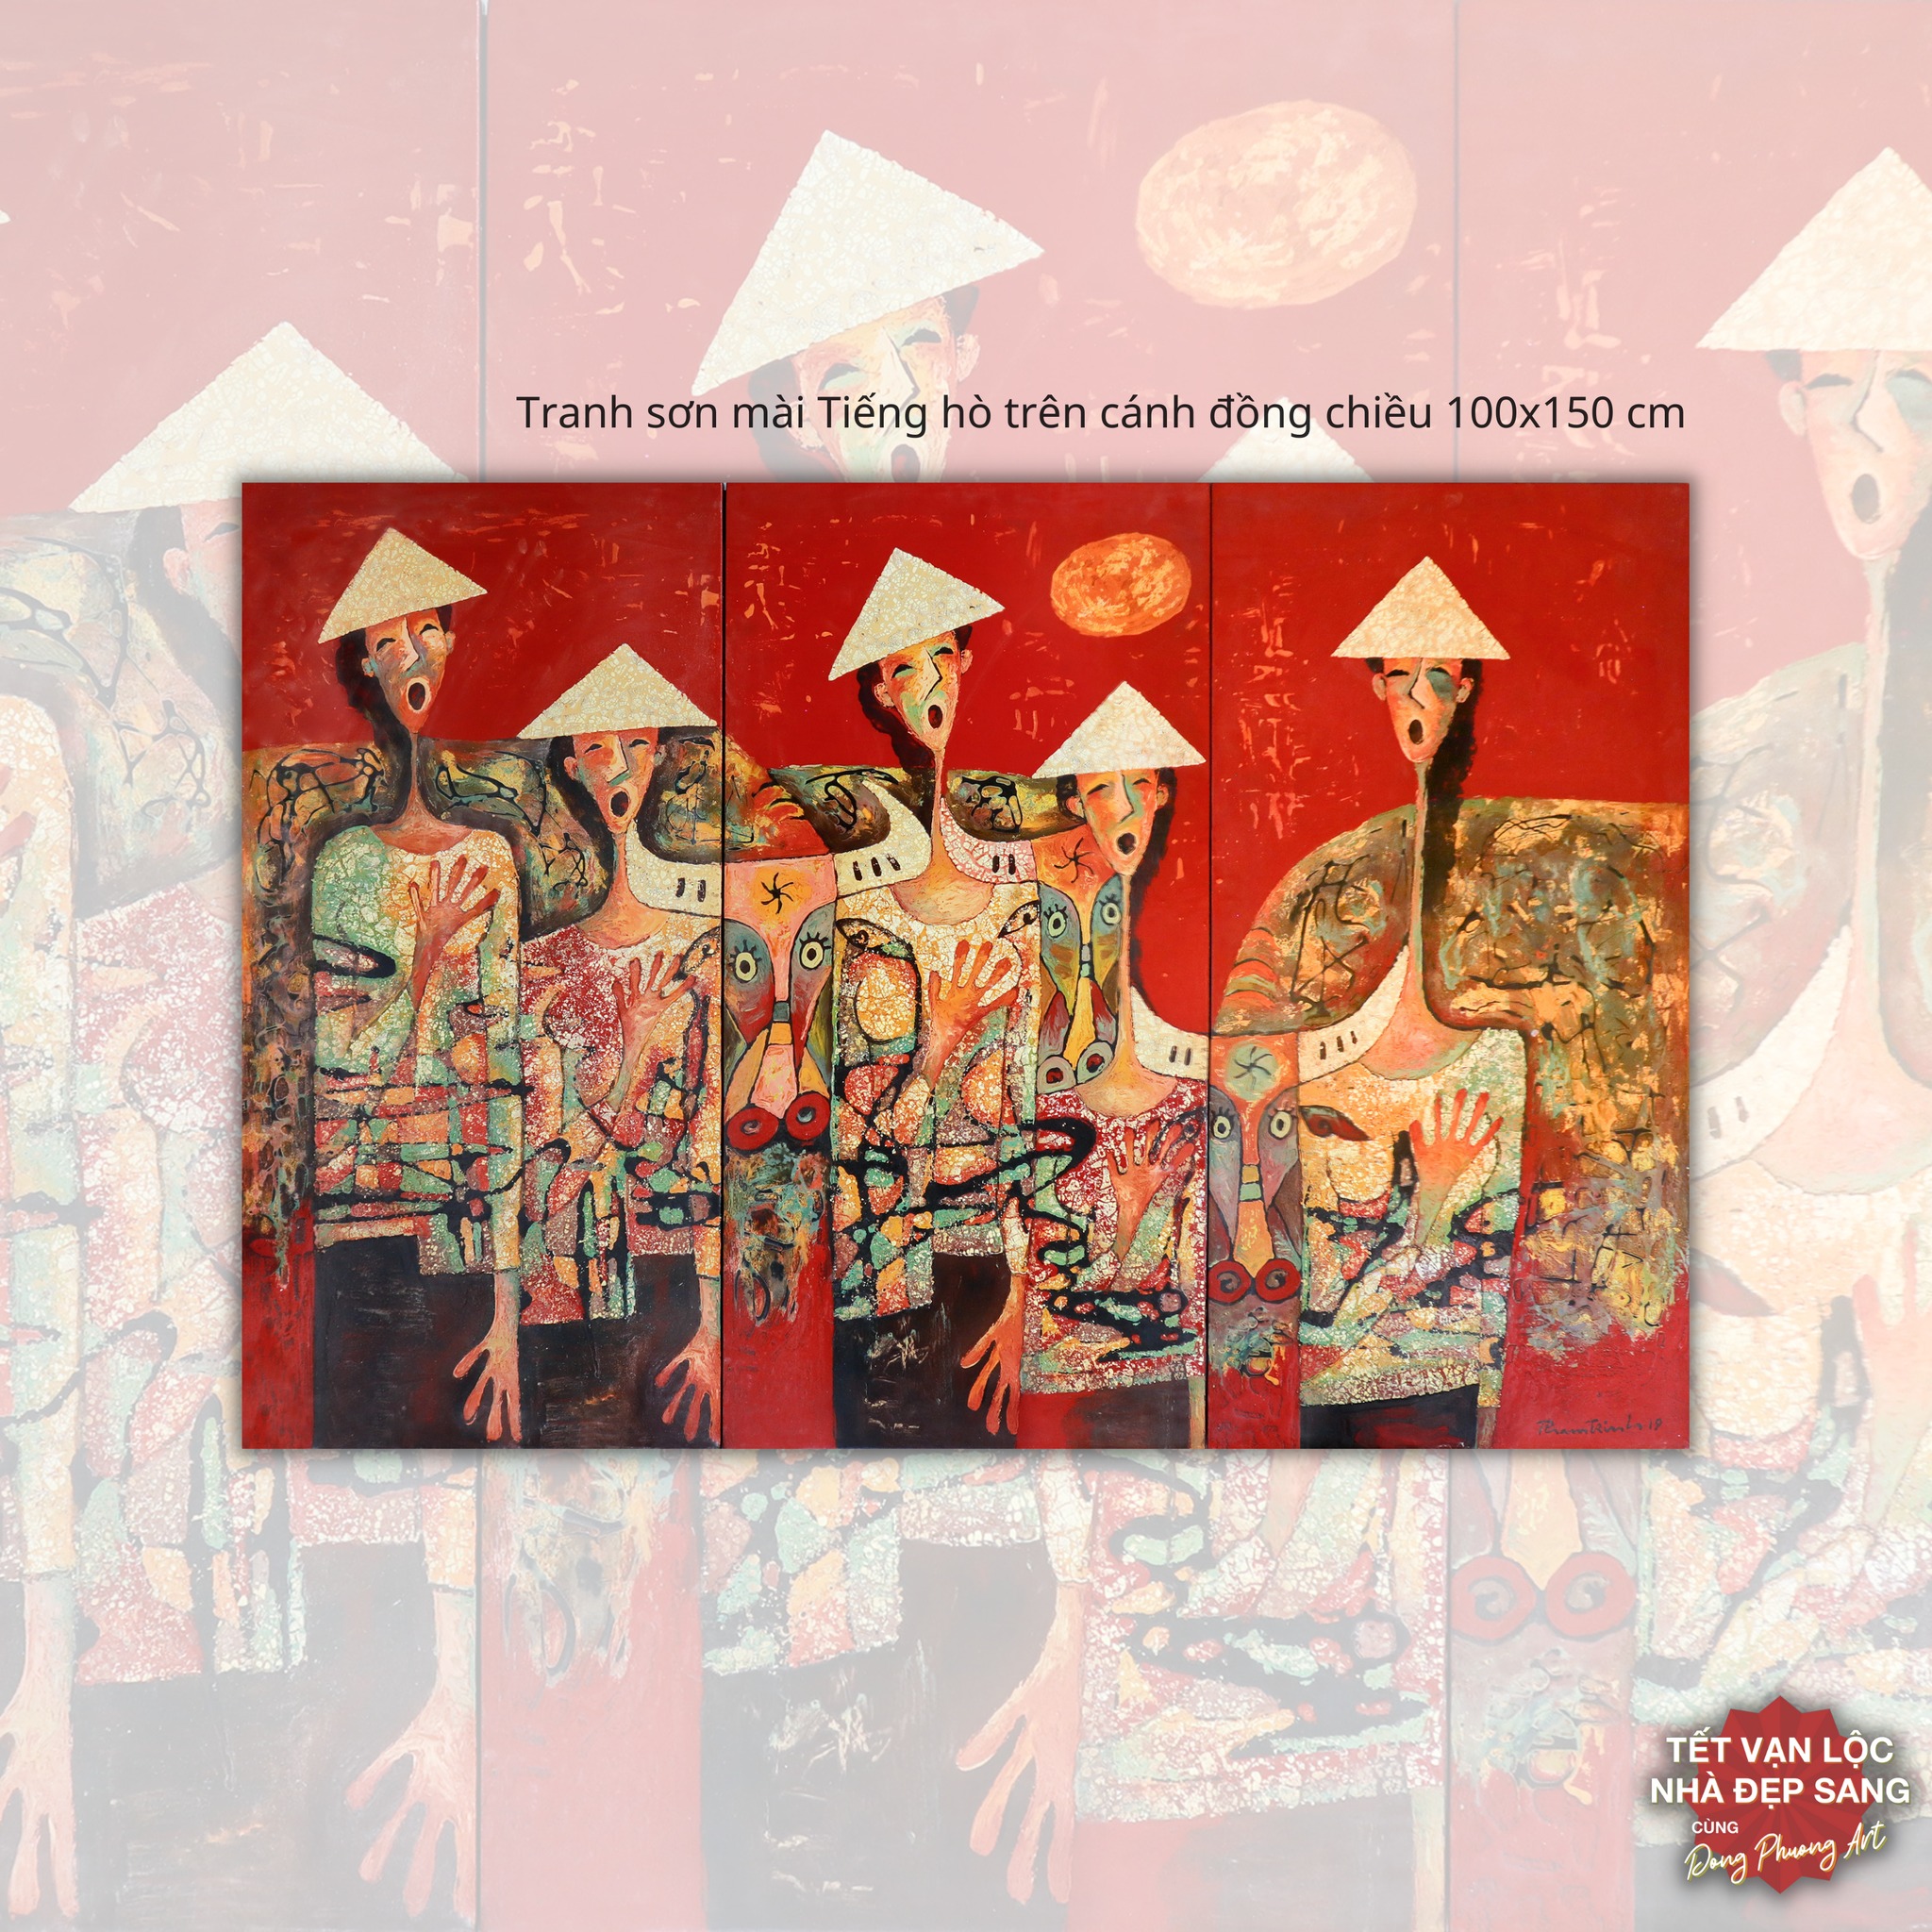 Tranh sơn mài “Tiếng hò trên cánh đồng chiều” của họa sĩ Phạm Trinh hiện đang có tại Đông Phương Art